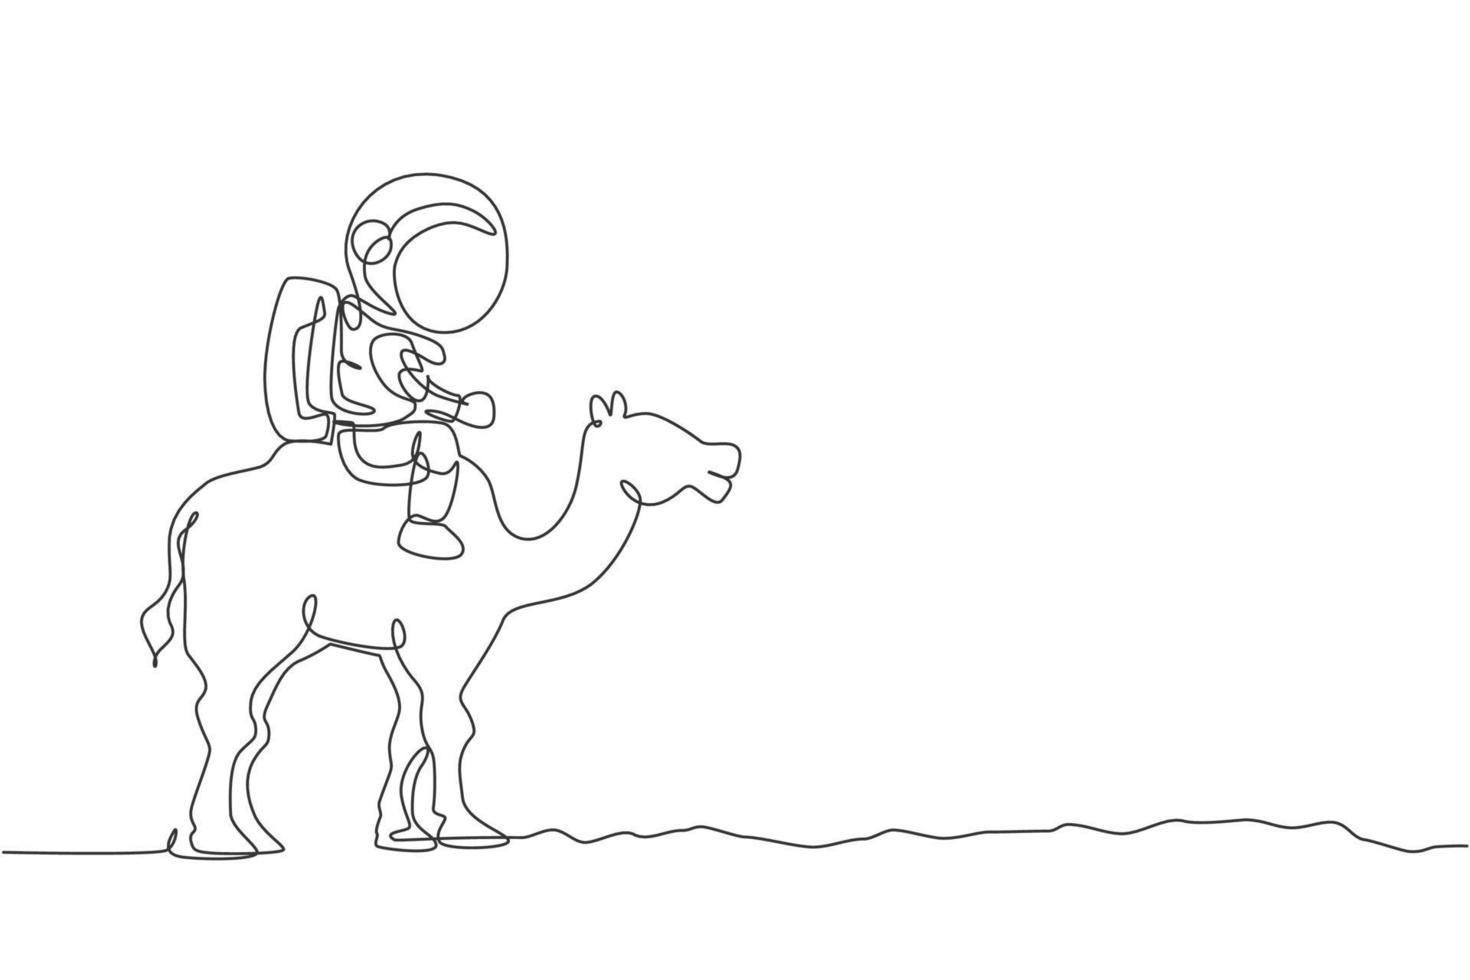 enda kontinuerlig linjeteckning av kosmonaut med rymddräkt som rider ökenkamel, husdjur i månytan. fantasy astronaut safari resa koncept. trendig en linje rita design vektor illustration